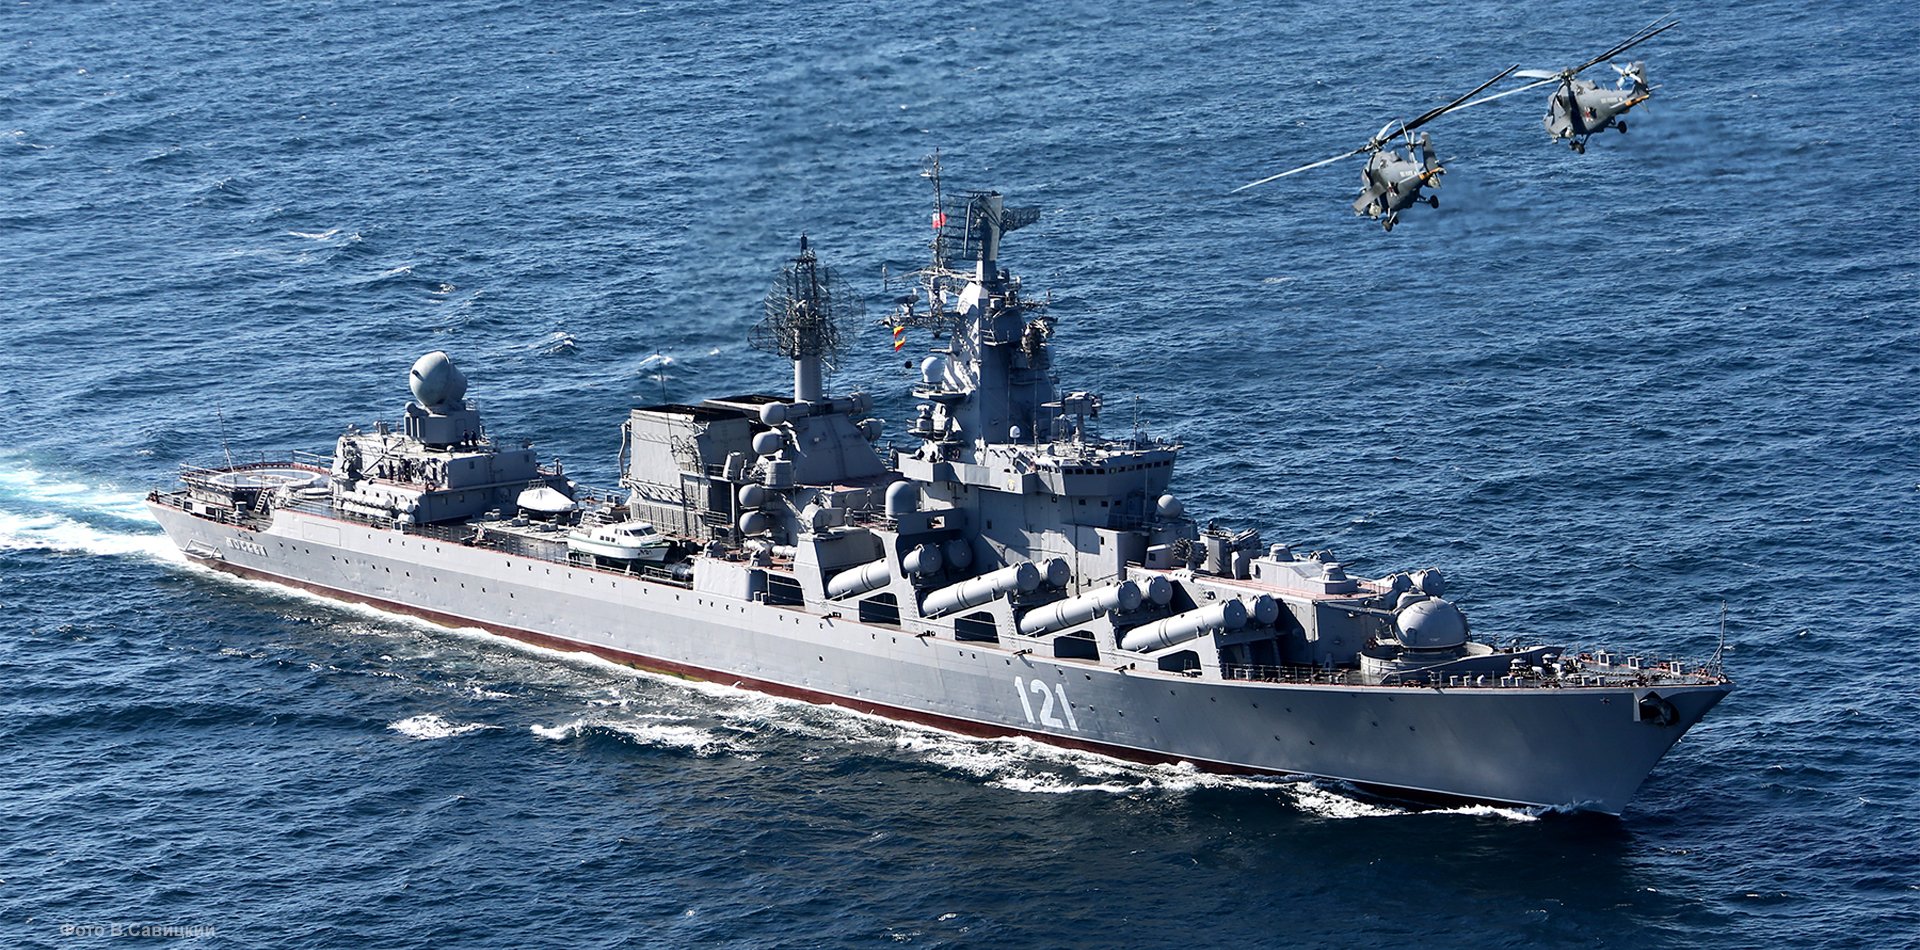 Ρωσικό πλοίο Moskva: Μπορεί να μετέφερε κομμάτι από τον σταυρό του Χριστού;